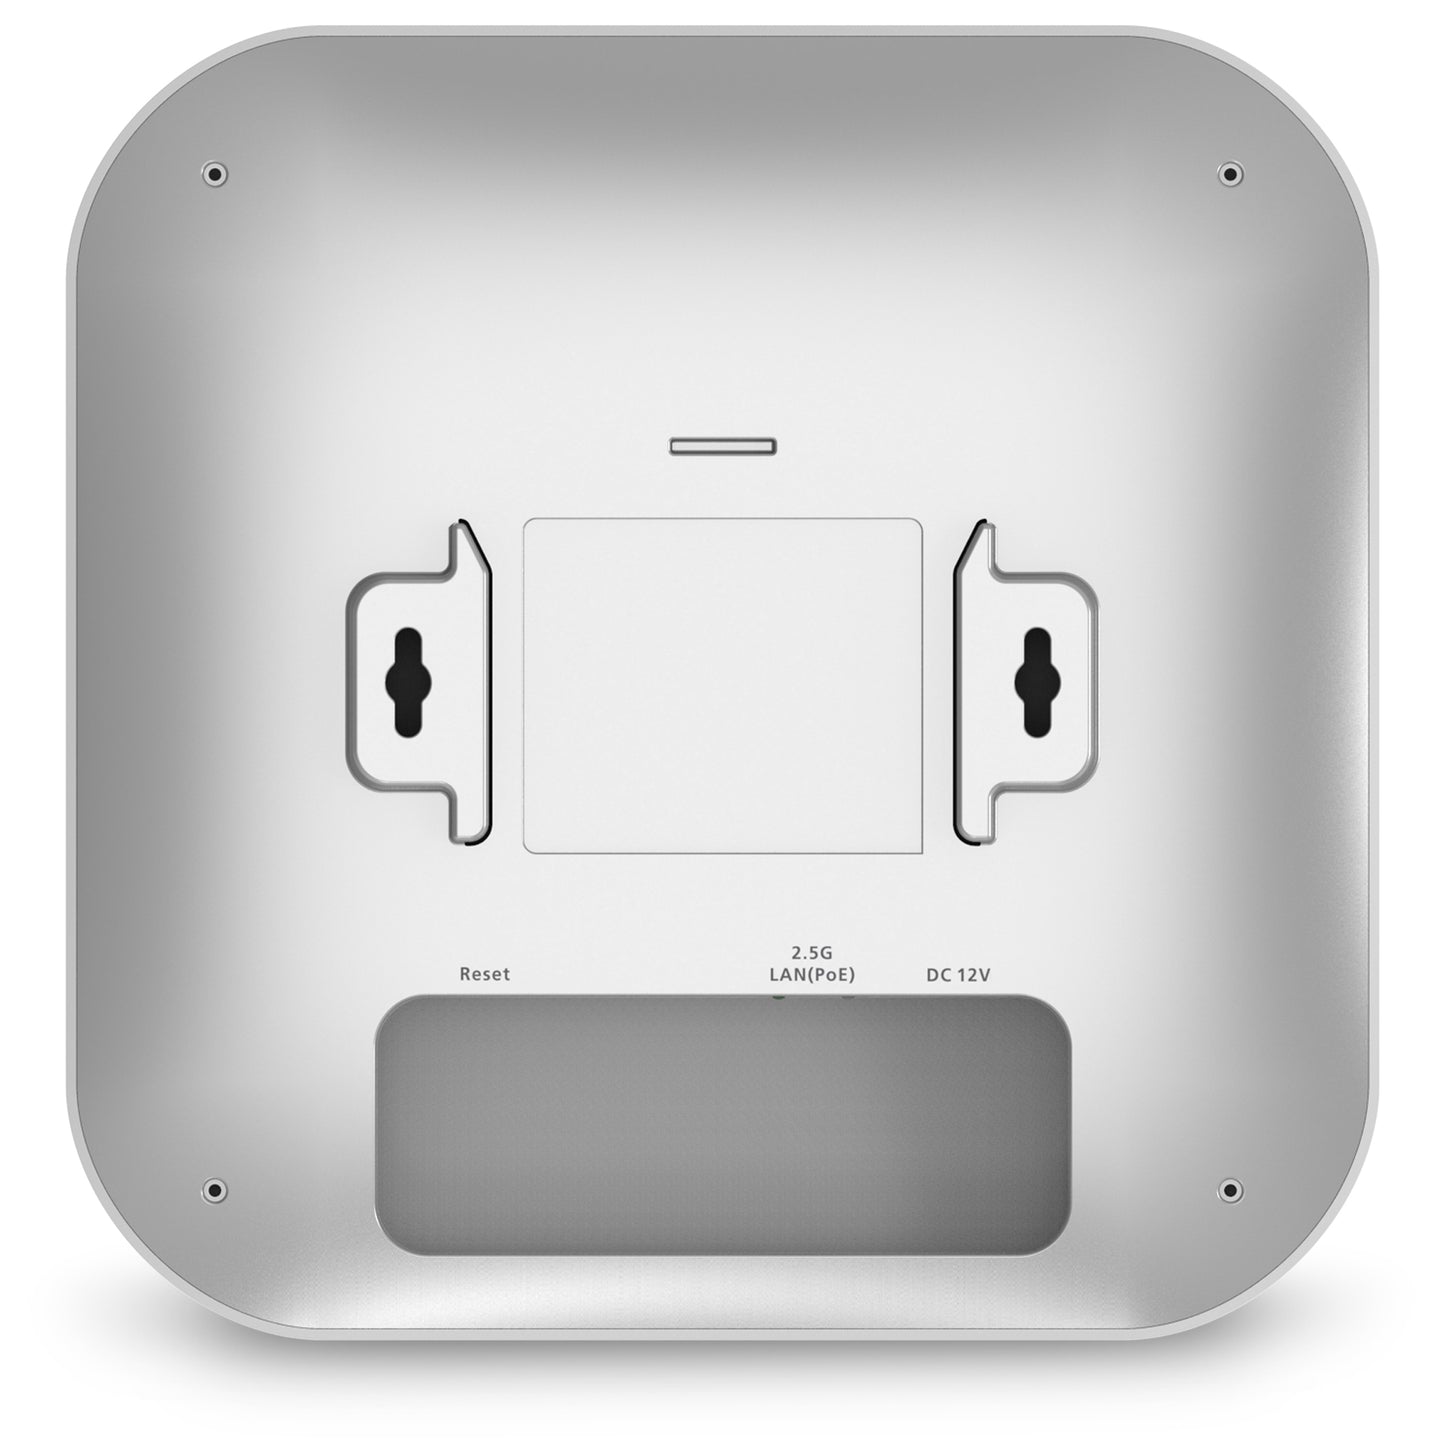 EWS276-FIT: Punto de acceso Wi-Fi 6 inalámbrico para interiores EnGenius Fit 4×4